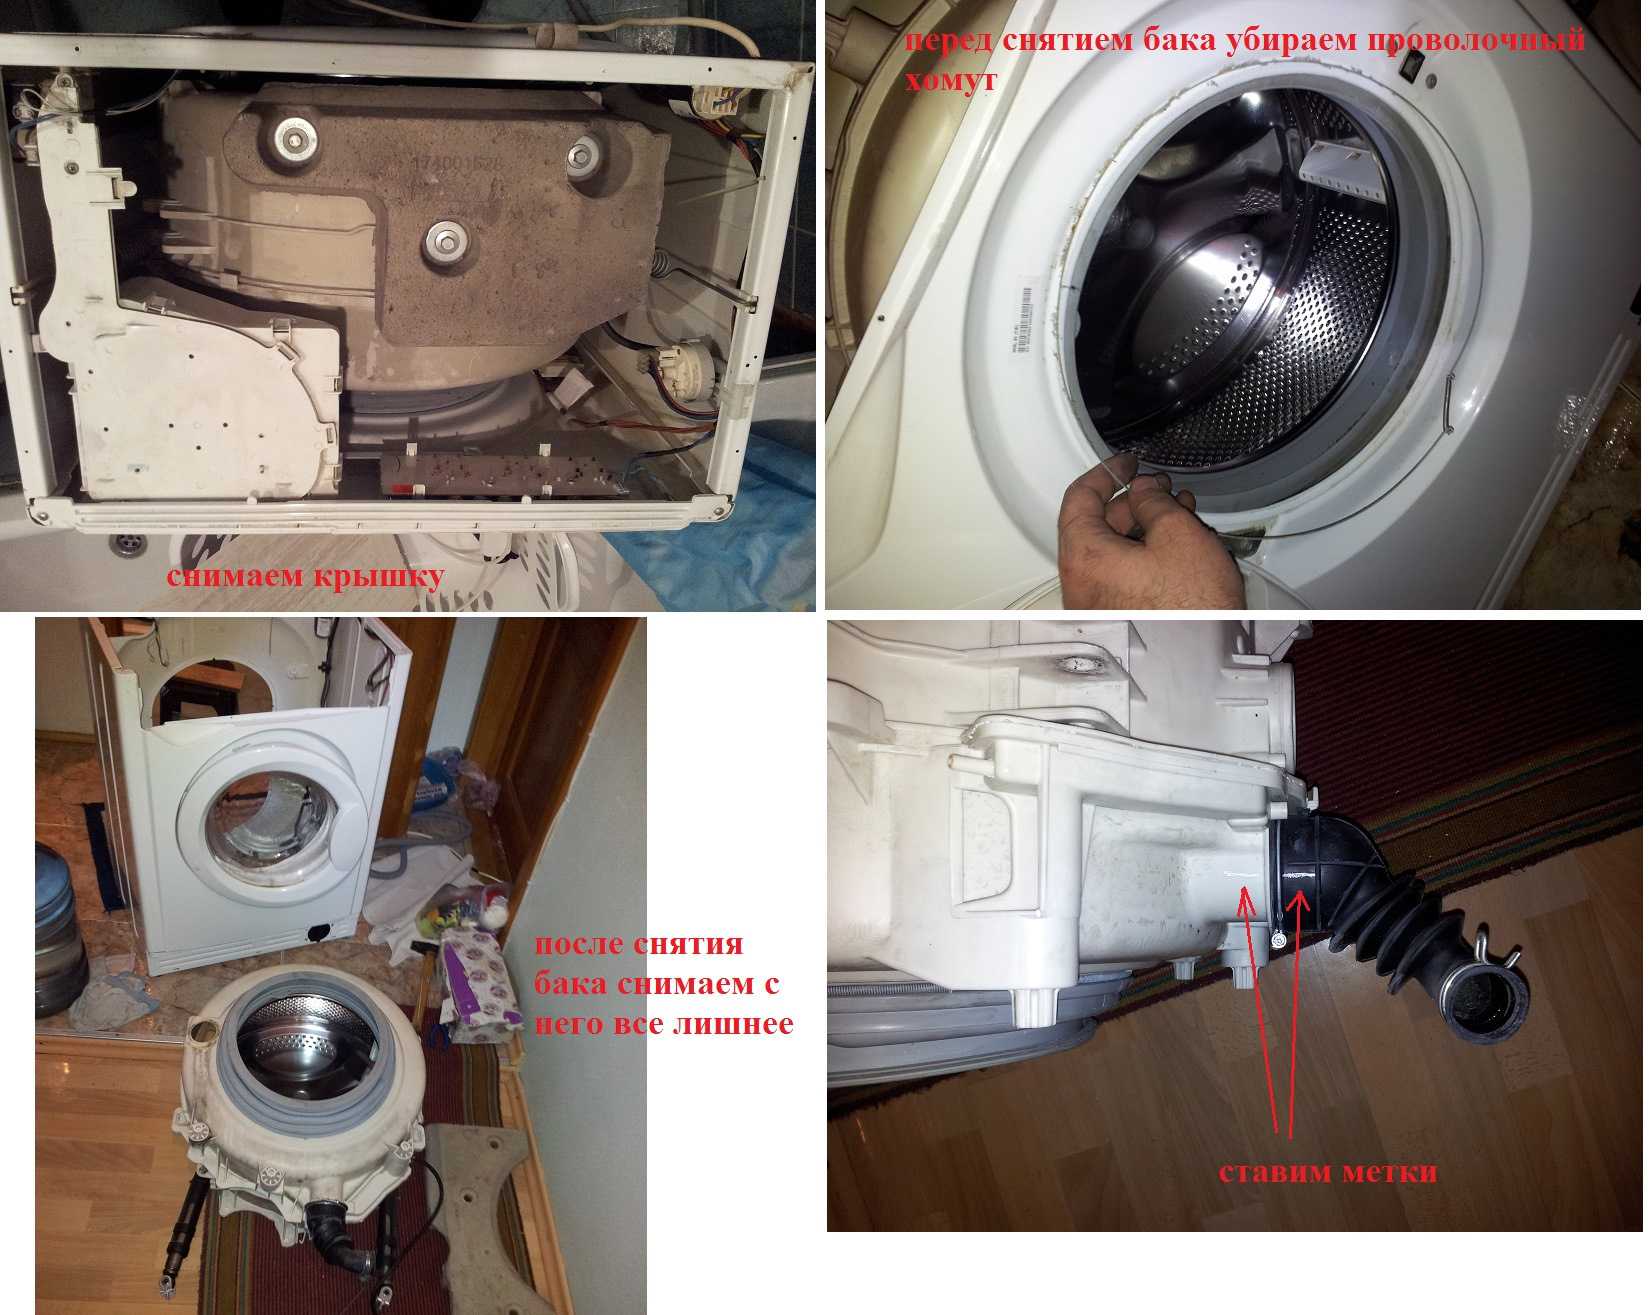 Как пользоваться стиральной машиной индезит: инструкция по применению, как осуществить первый запуск, как использовать стиралки-автомат indesit старого образца?